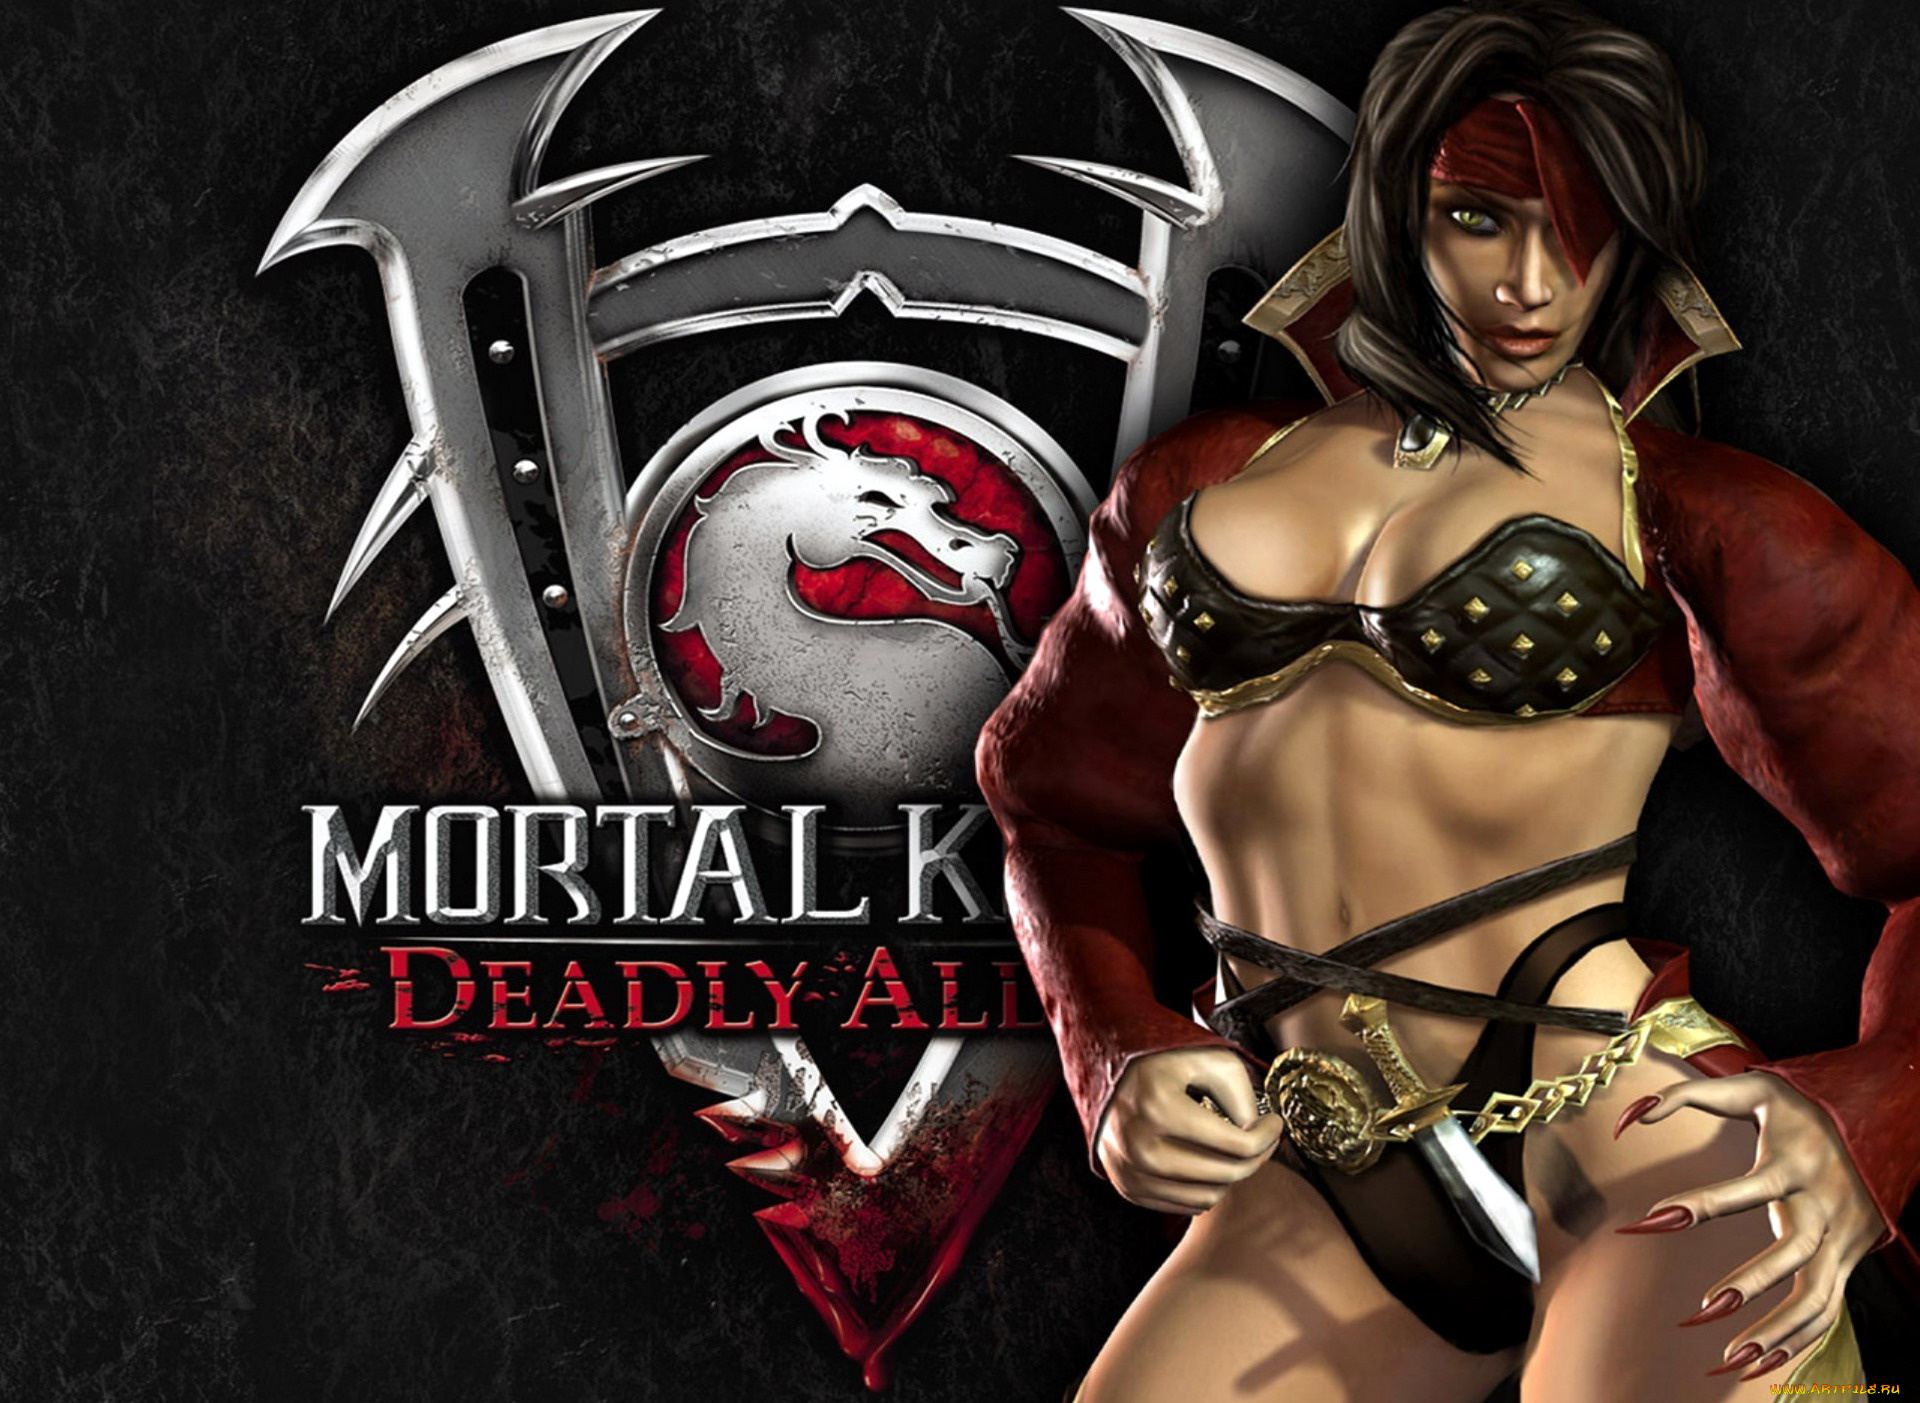 видео, игры, mortal, kombat, deadly, alliance, девушка, символ